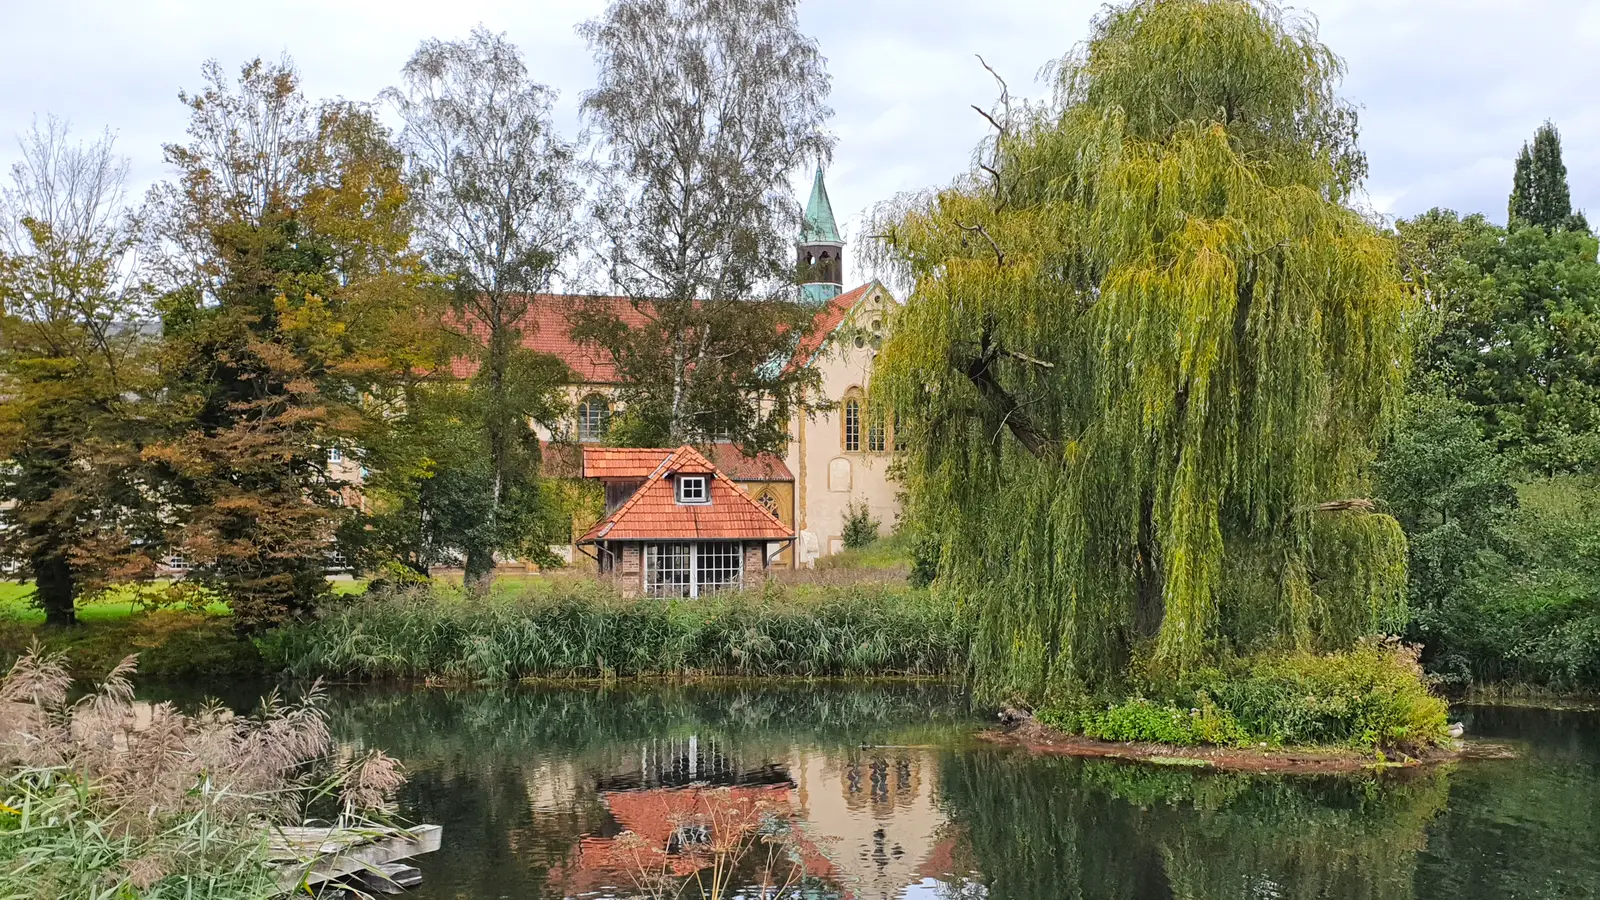 Kloster Marienfeld, Klöster im Teutoburger Wald, Sehenswürdigkeiten im Kreis Gütersloh, Wandern in Harsewinkel